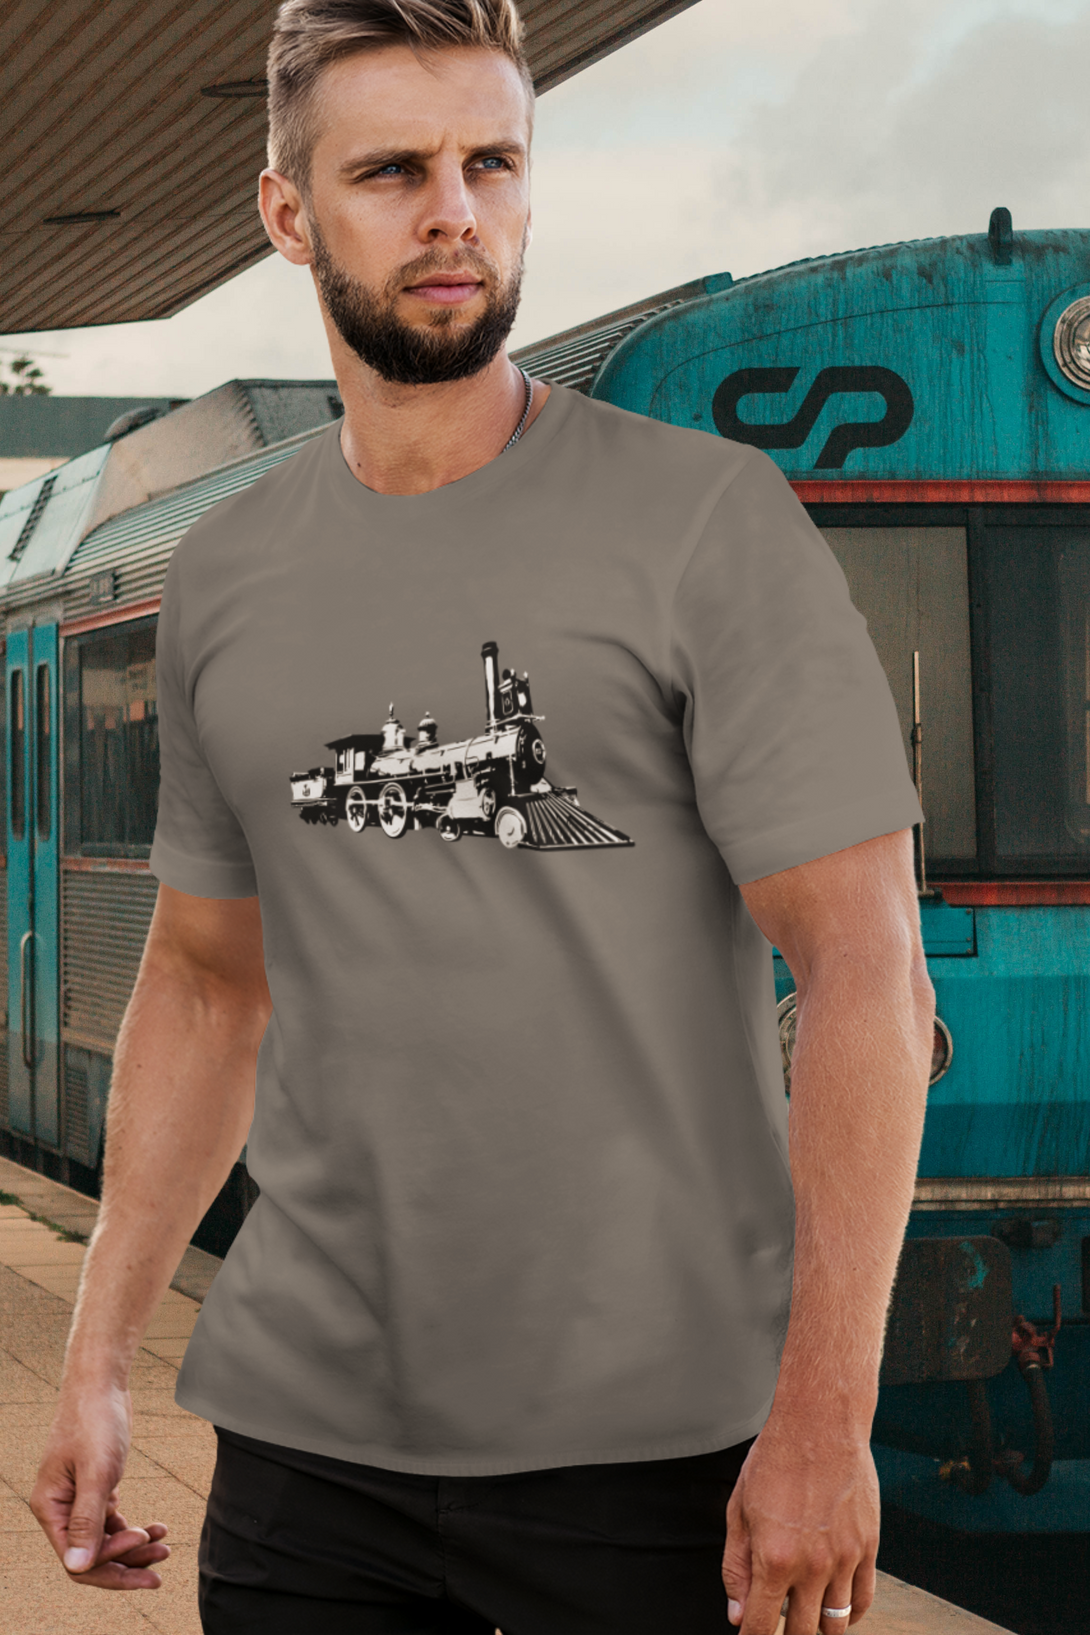 Vintage Locomotive Printed T-Shirt For Men - WowWaves - 2